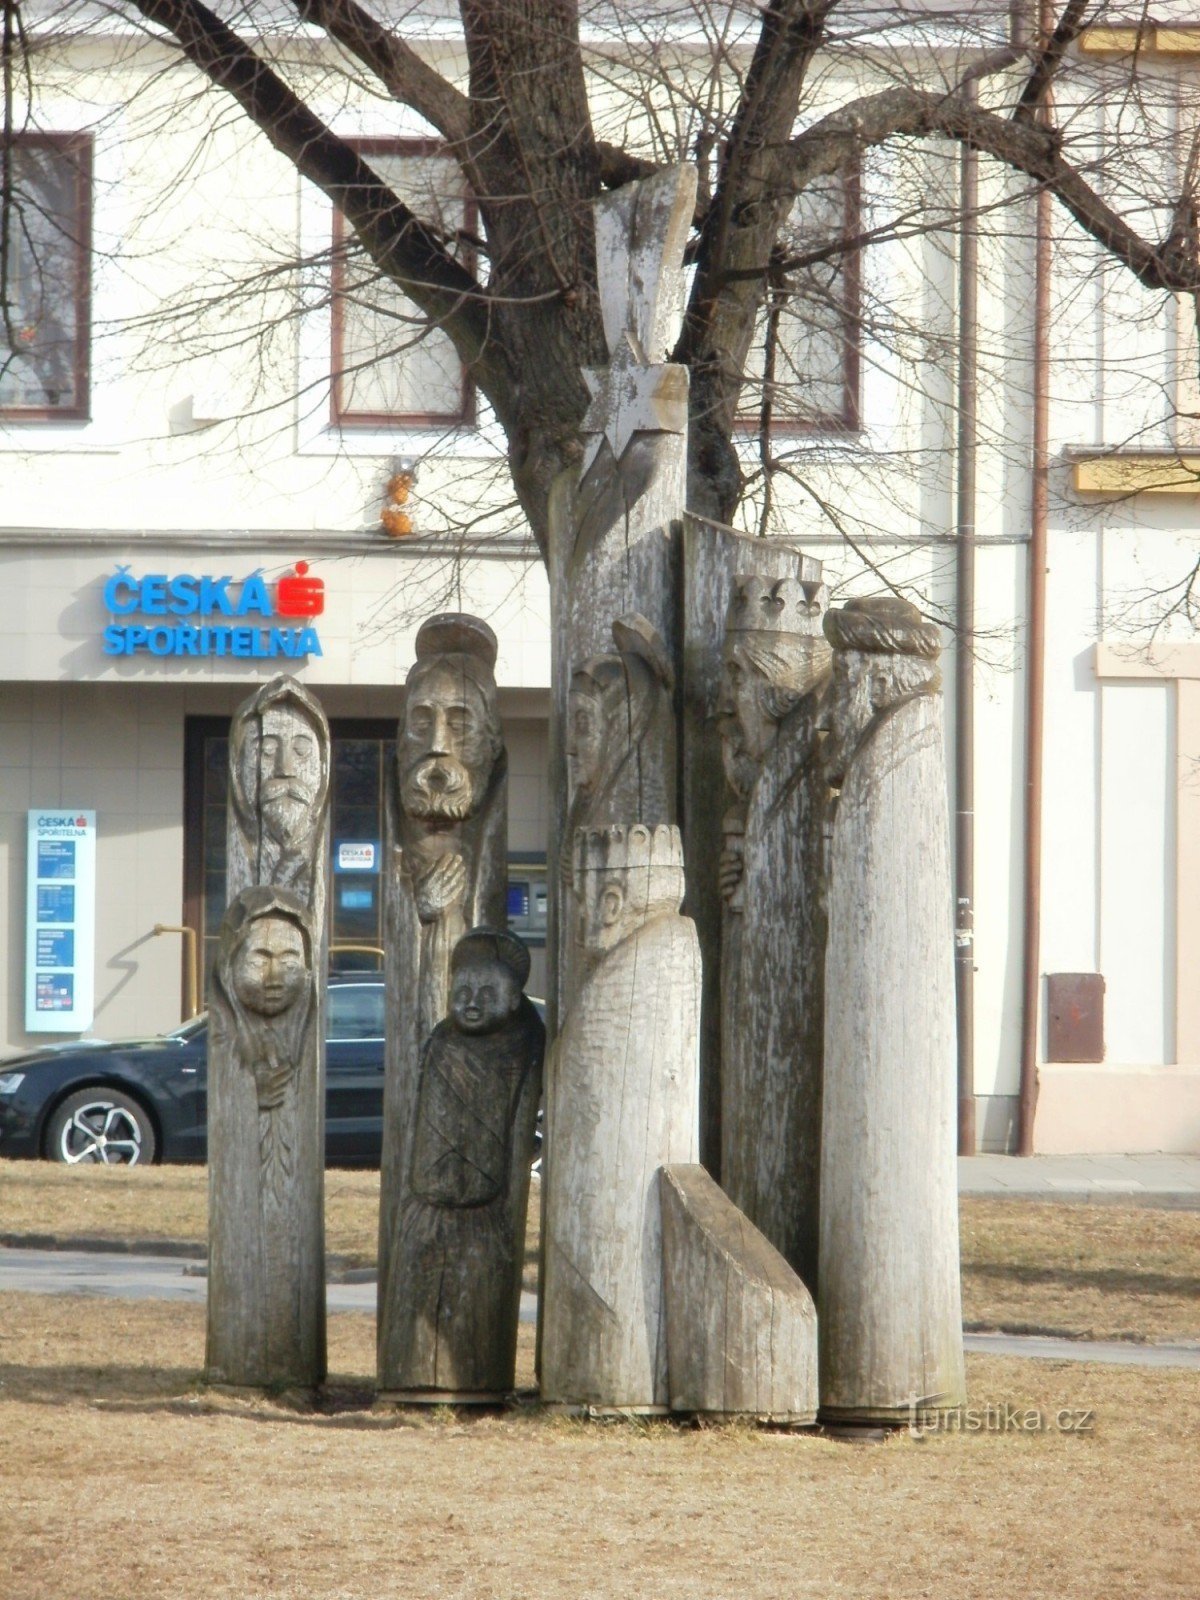 Třebechovice pod Oreb - wooden nativity scene in the square